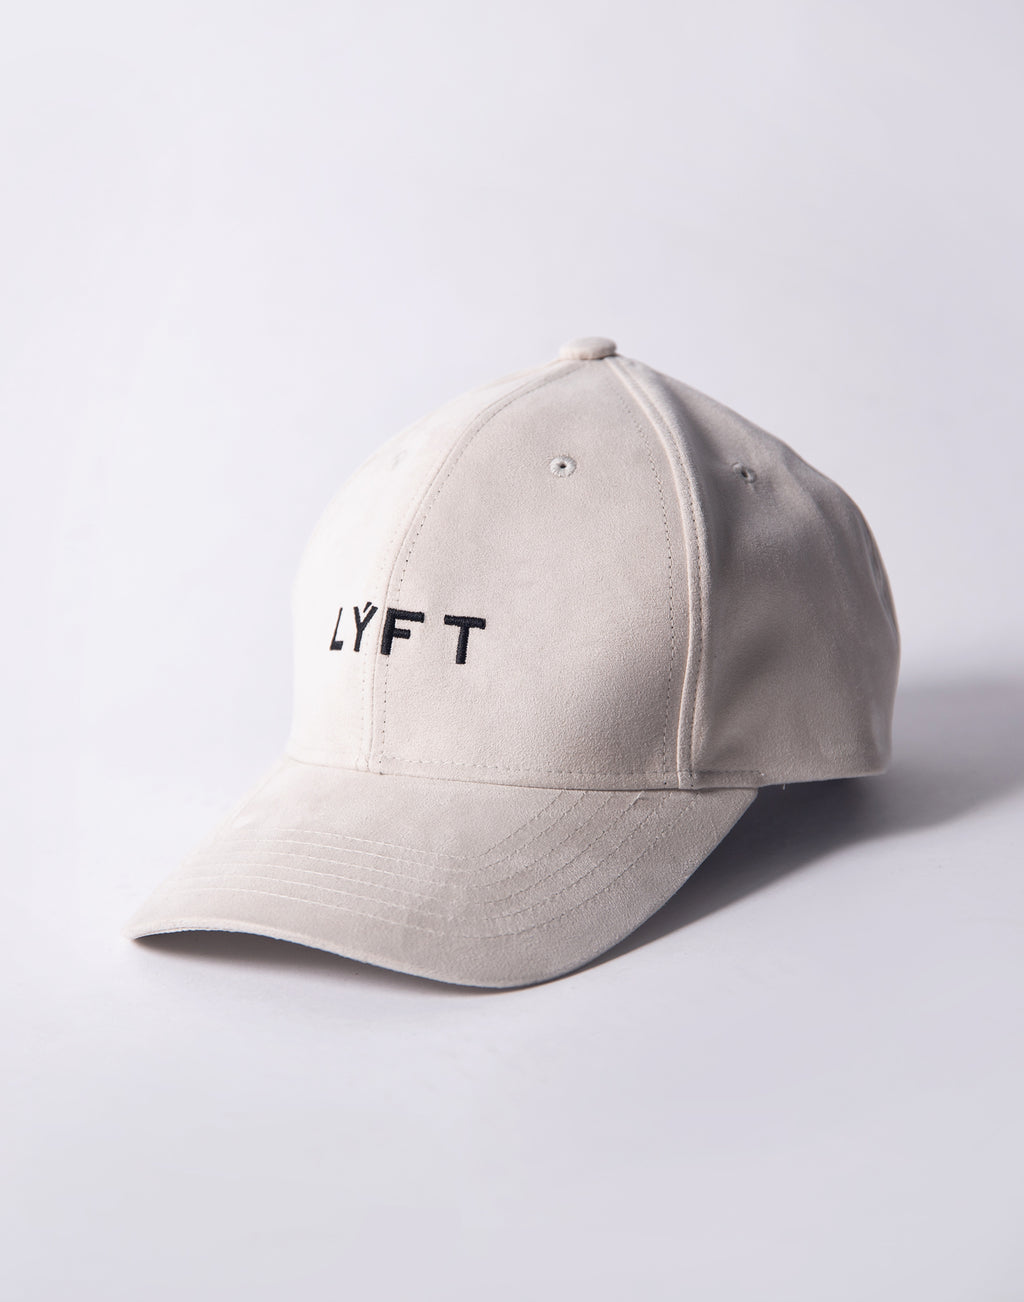 【LYFT-リフト 公式サイト】Ý Cap - White beige – LÝFT